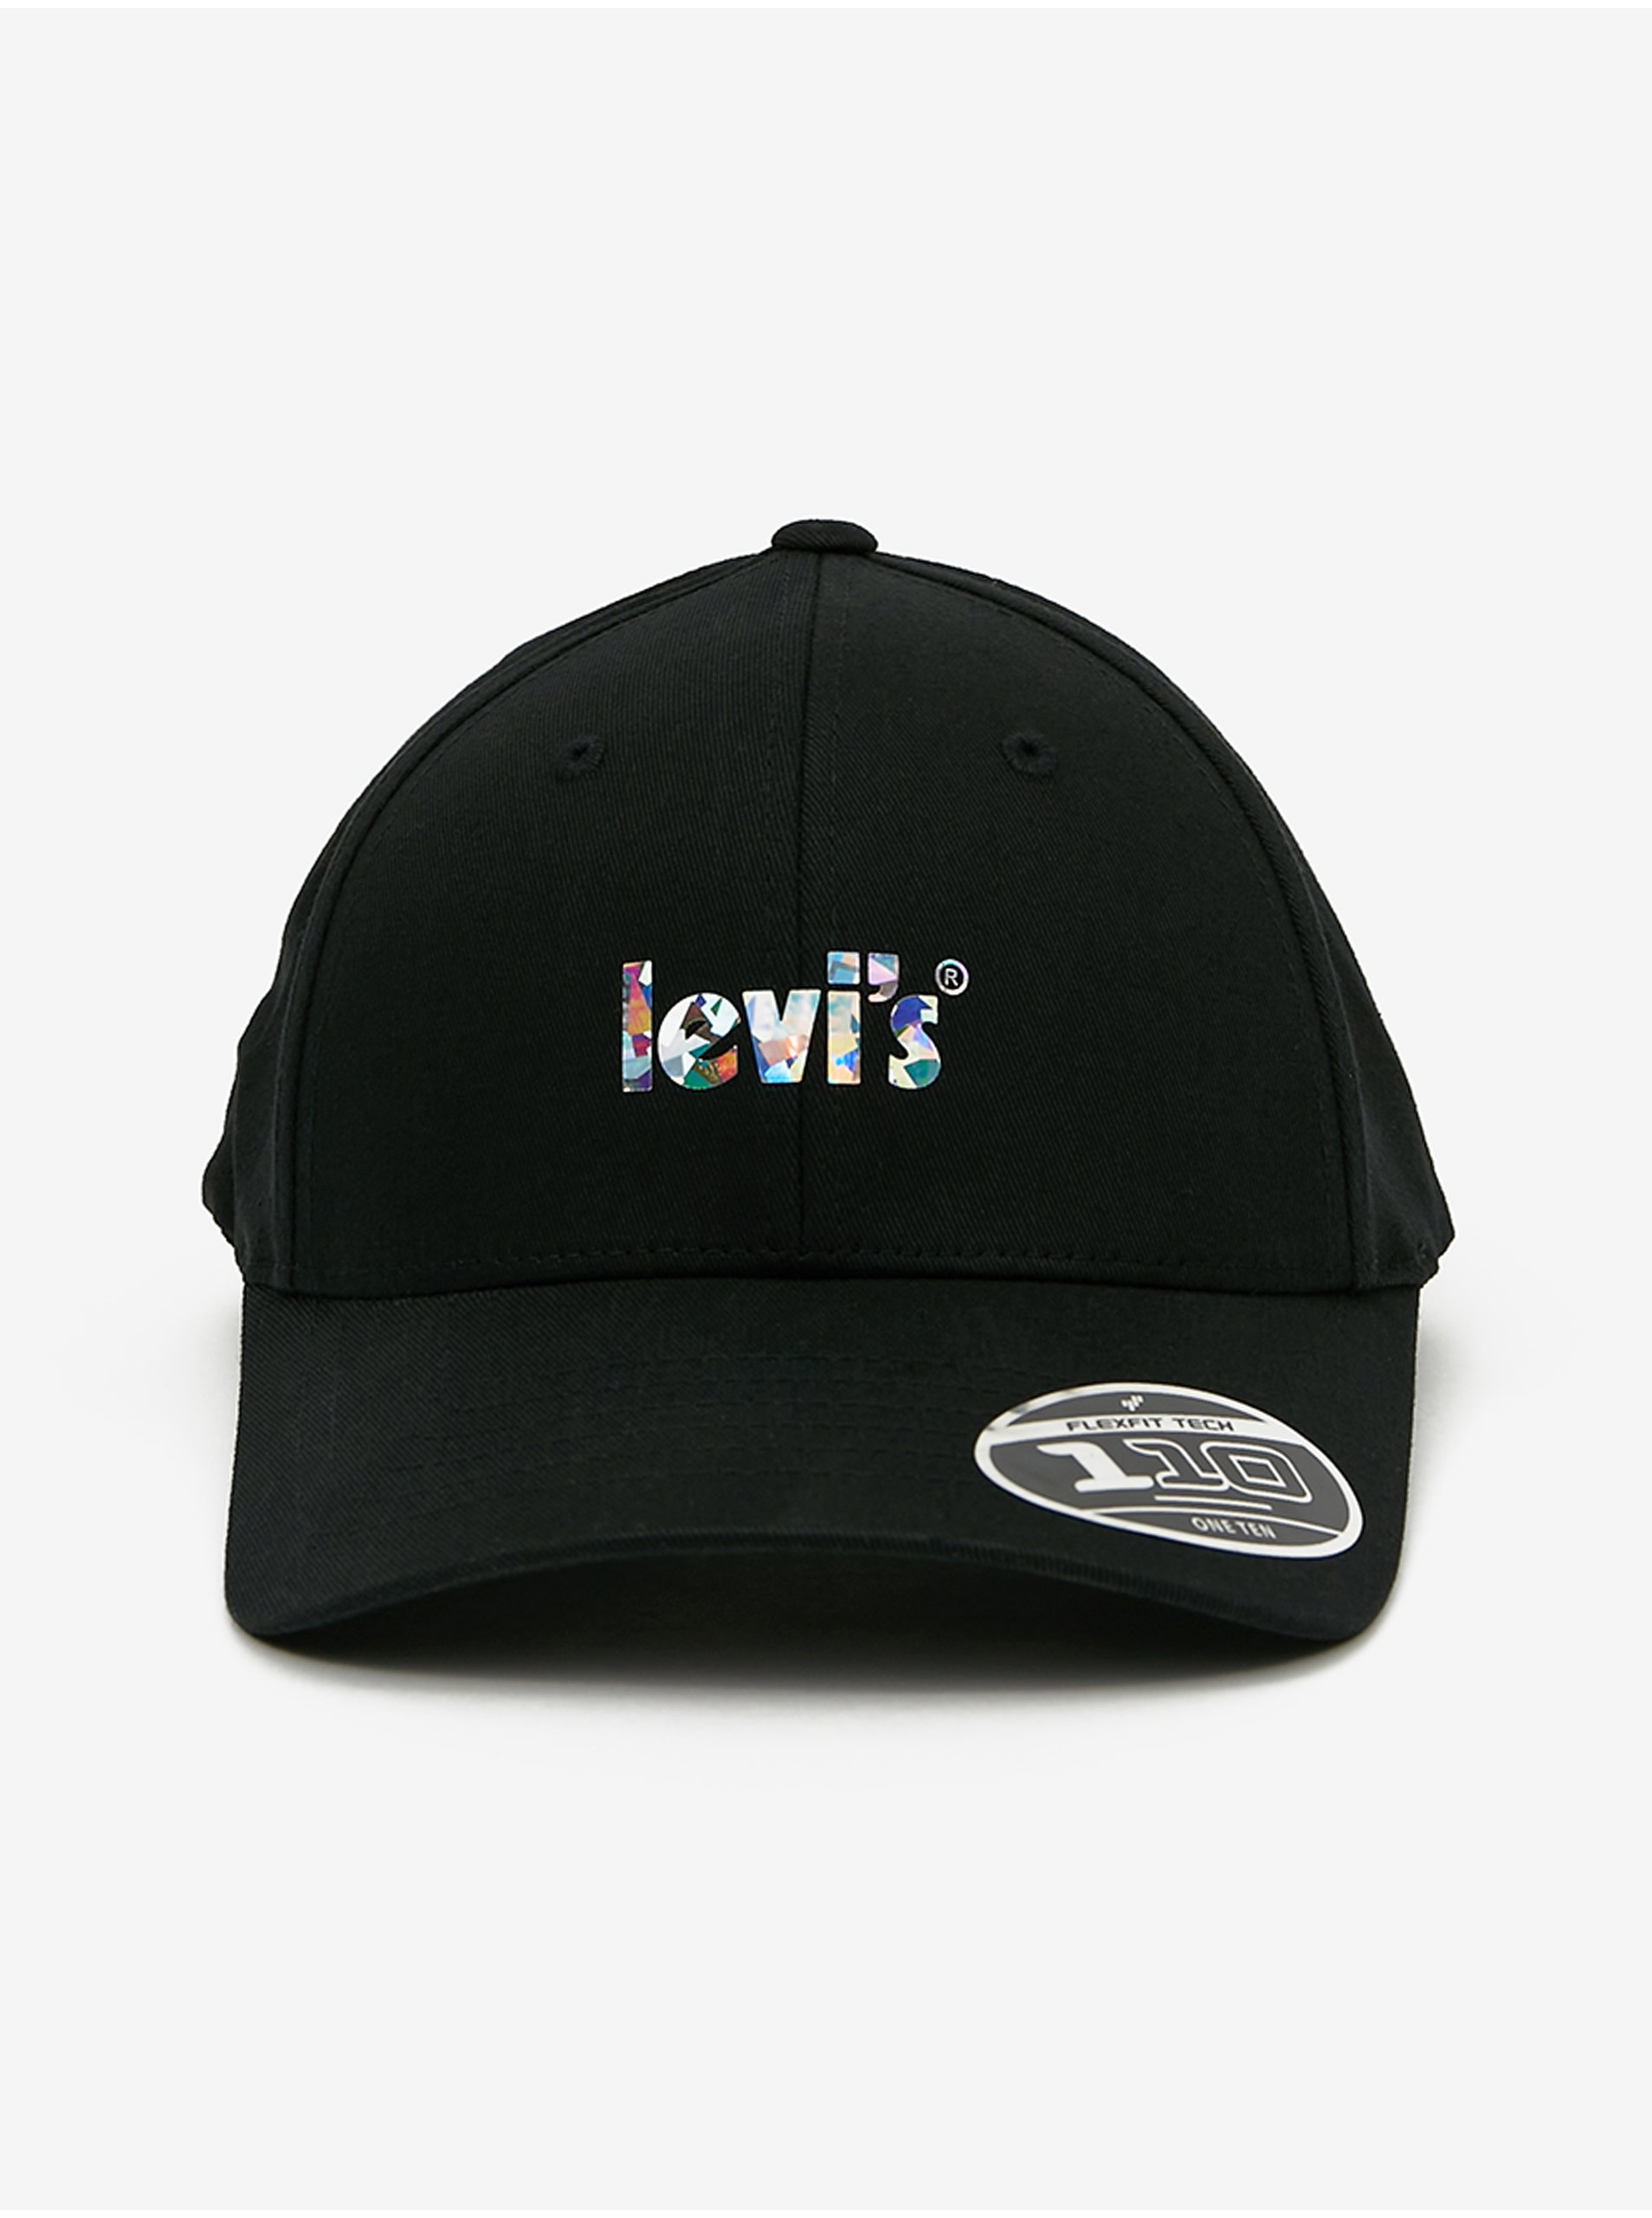 Levi's Black Ladies Cap Levi's® - Women